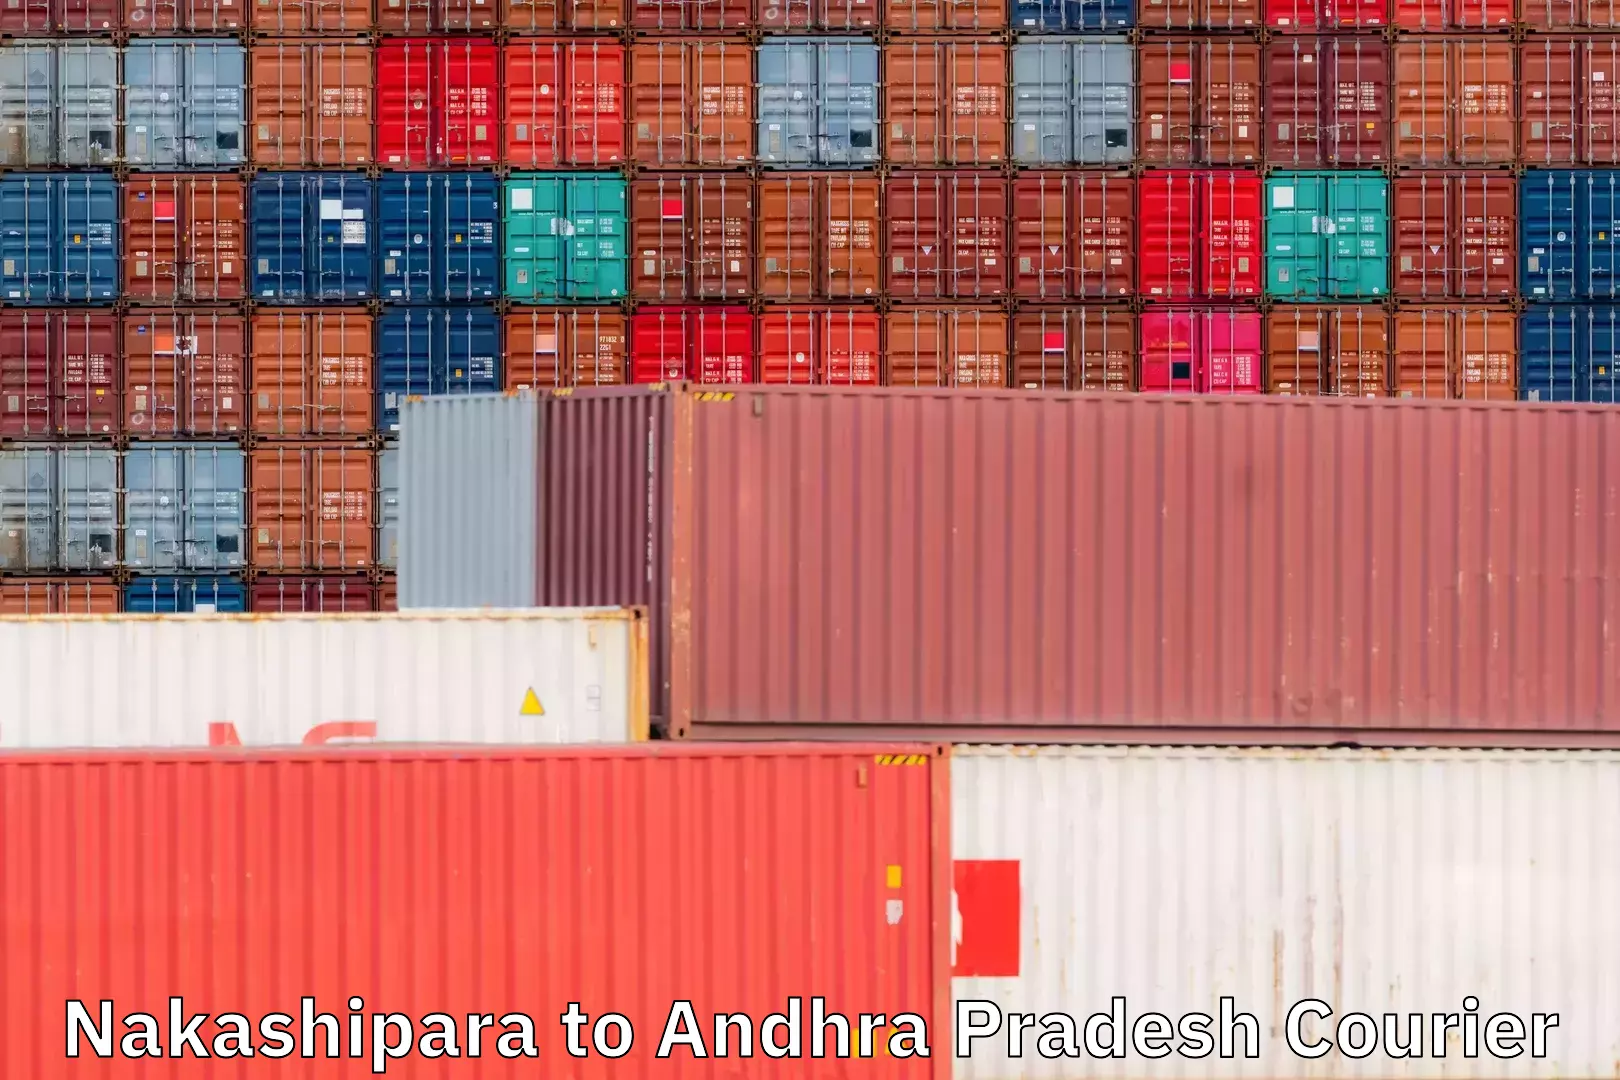 Comprehensive shipping network Nakashipara to Andhra Pradesh